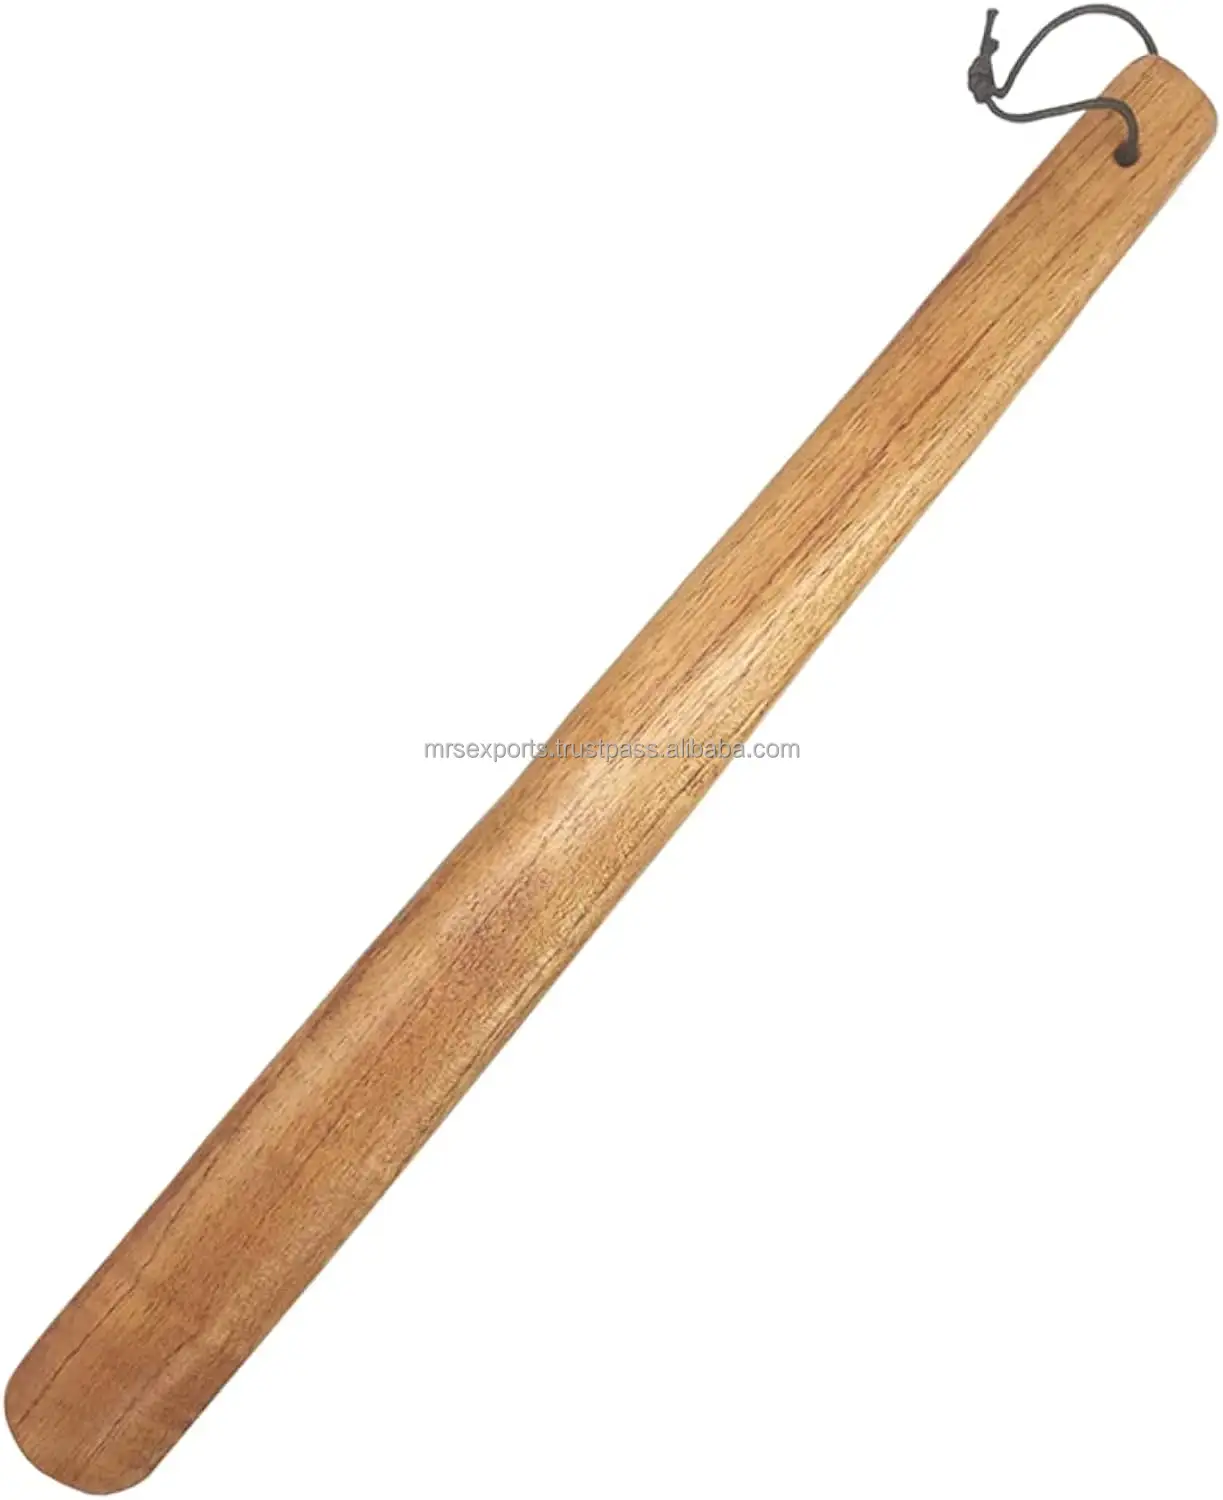 100 % hochwertige Holzschuhe Horn gewürztes Holz natürliches Oberteil Holz Schuhe Lifter Schuhanhänger für Unisex zu günstigen Preisen